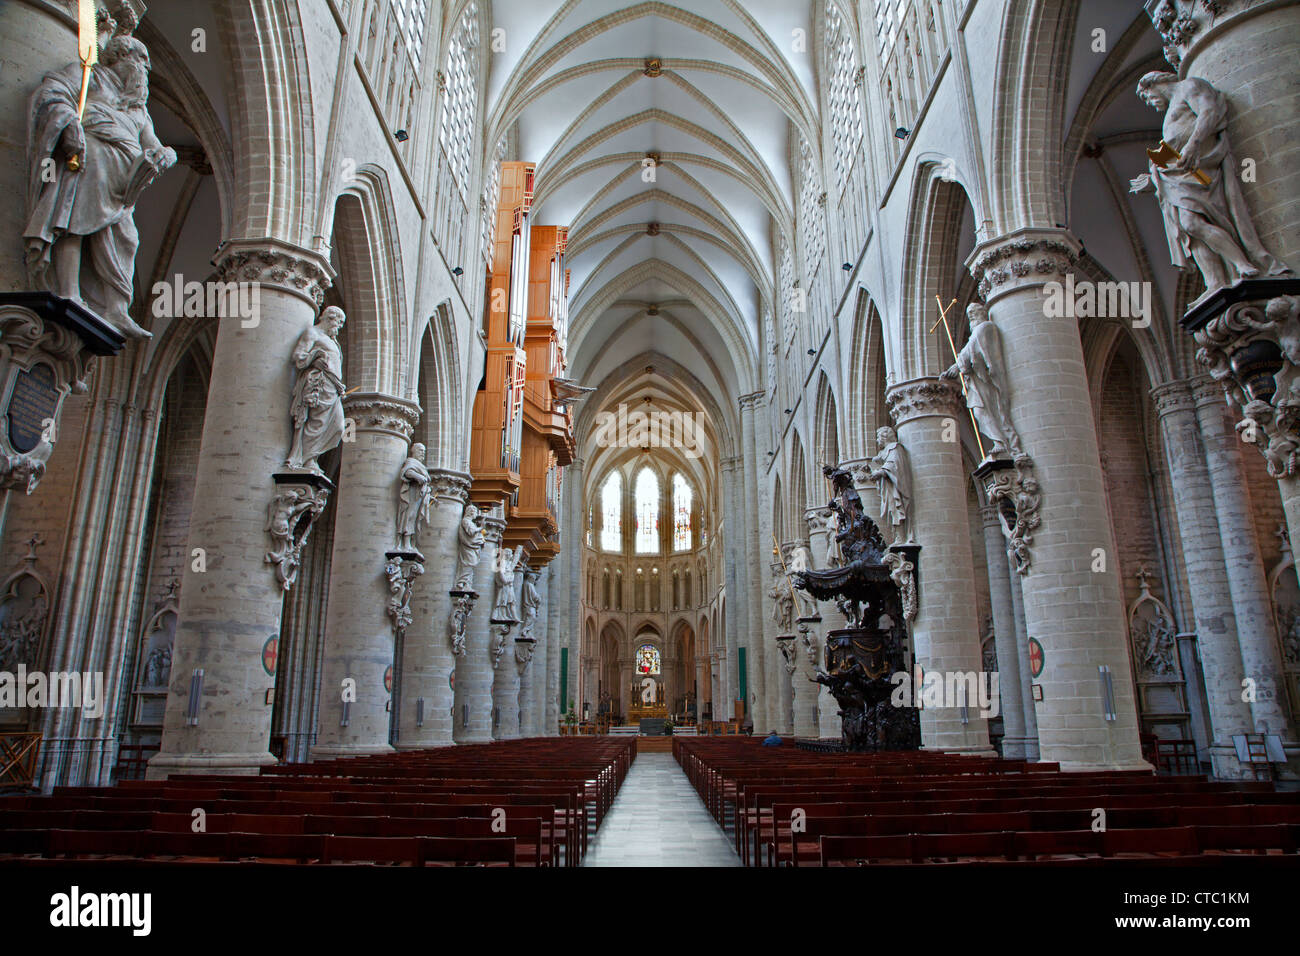 Bruxelles - 22 giugno: navata gotica della Cattedrale di Saint Michael il 22 giugno 2012 a Bruxelles. Foto Stock